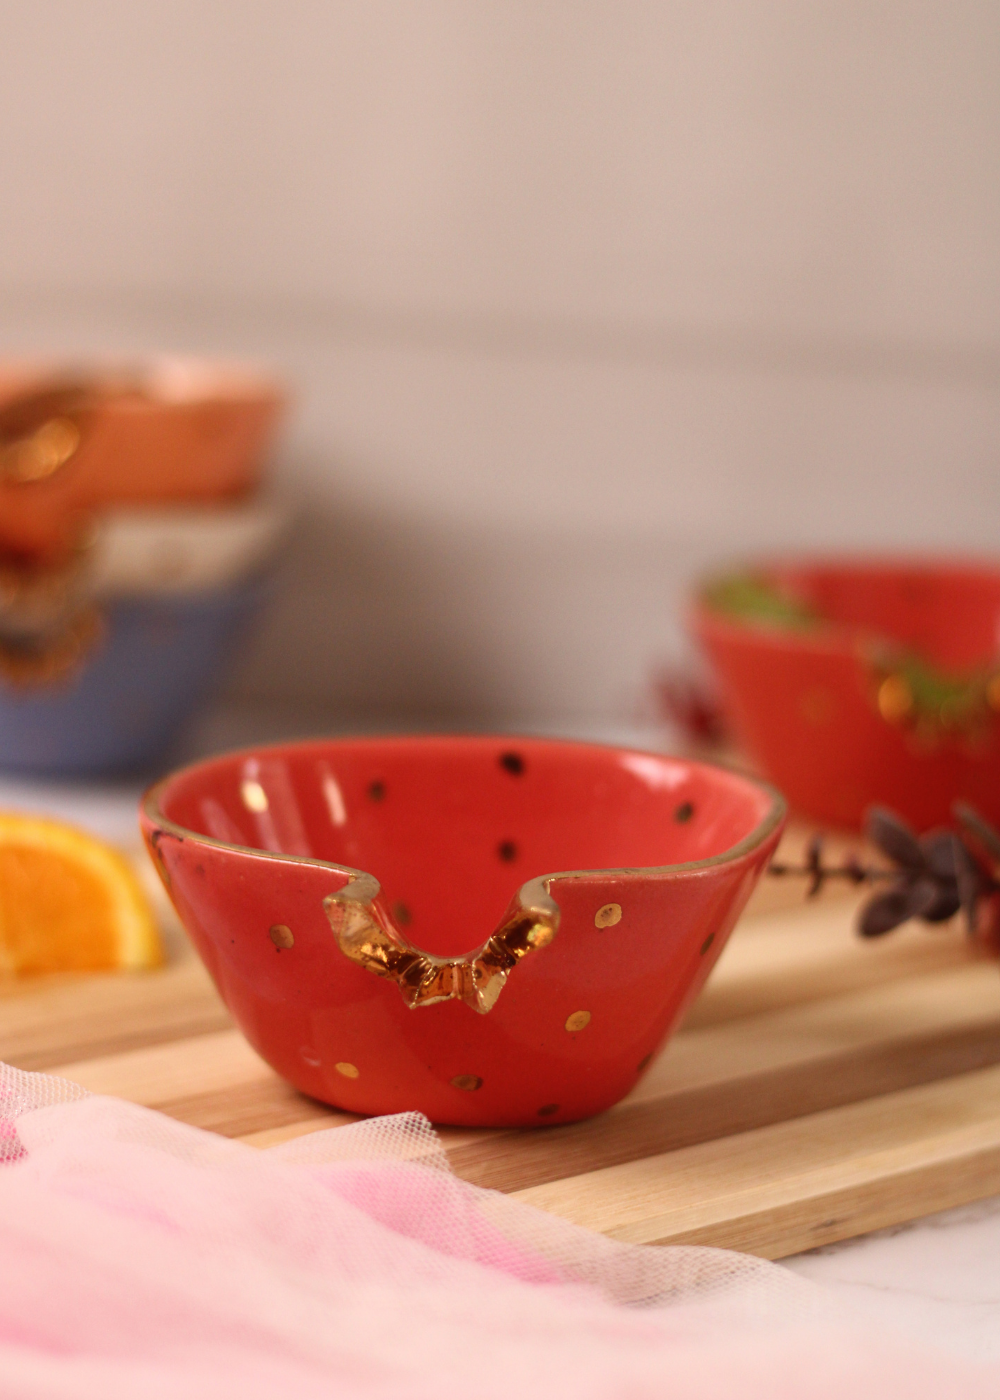 Handmade ceramic anar ice cream bowls red color